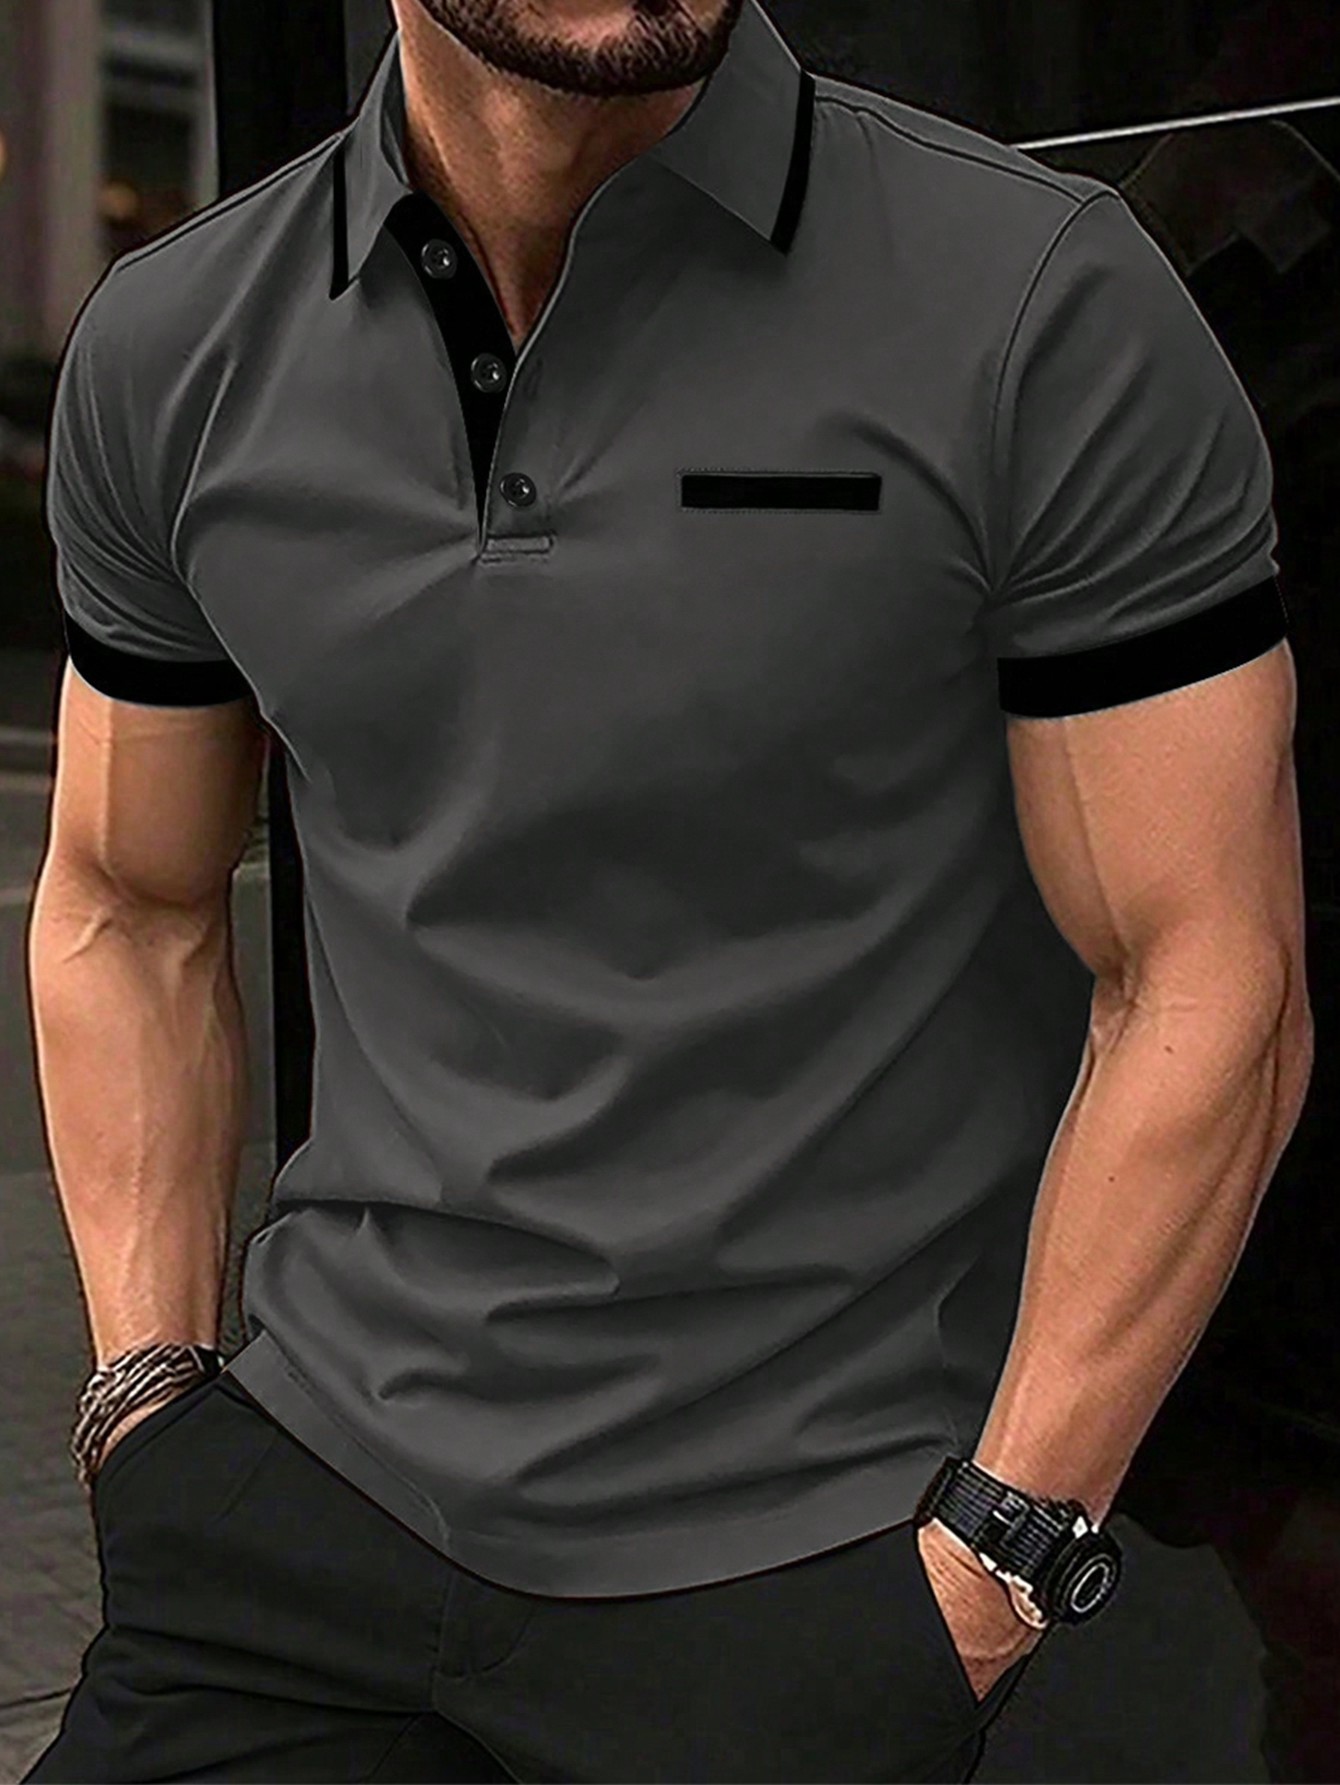 Мужская рубашка-поло контрастного цвета Manfinity Homme, темно-серый мужская рубашка поло контрастного цвета manfinity homme черный